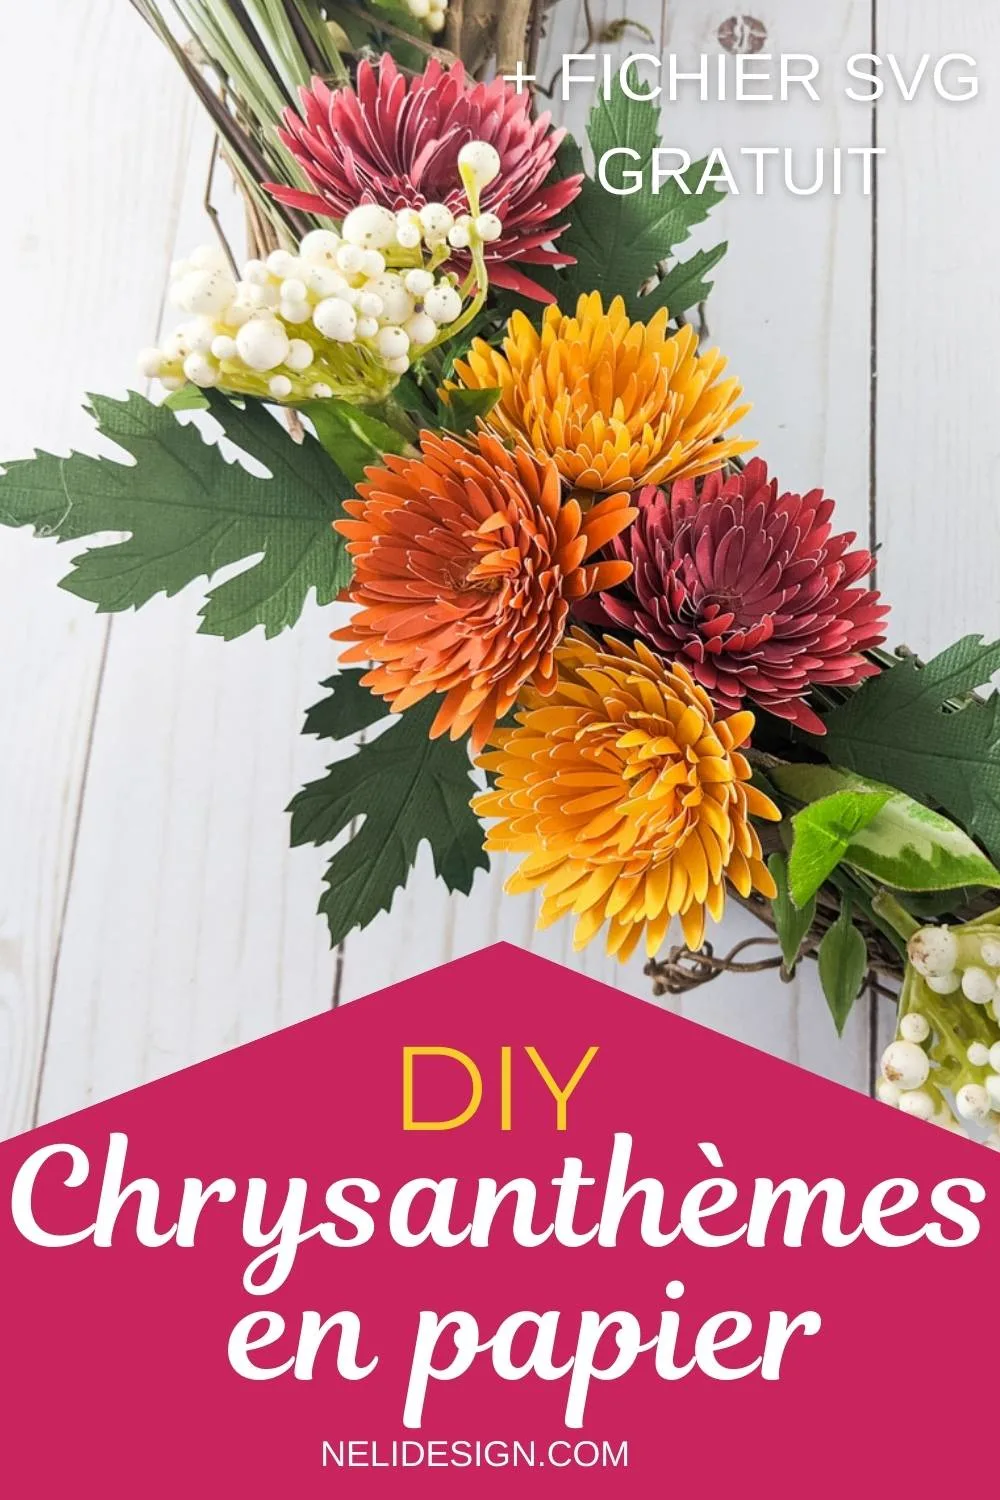 Image Pinterest écrit Comment faire des fleurs Chrysanthèmes de papier + fichier de découpe SVG gratuit